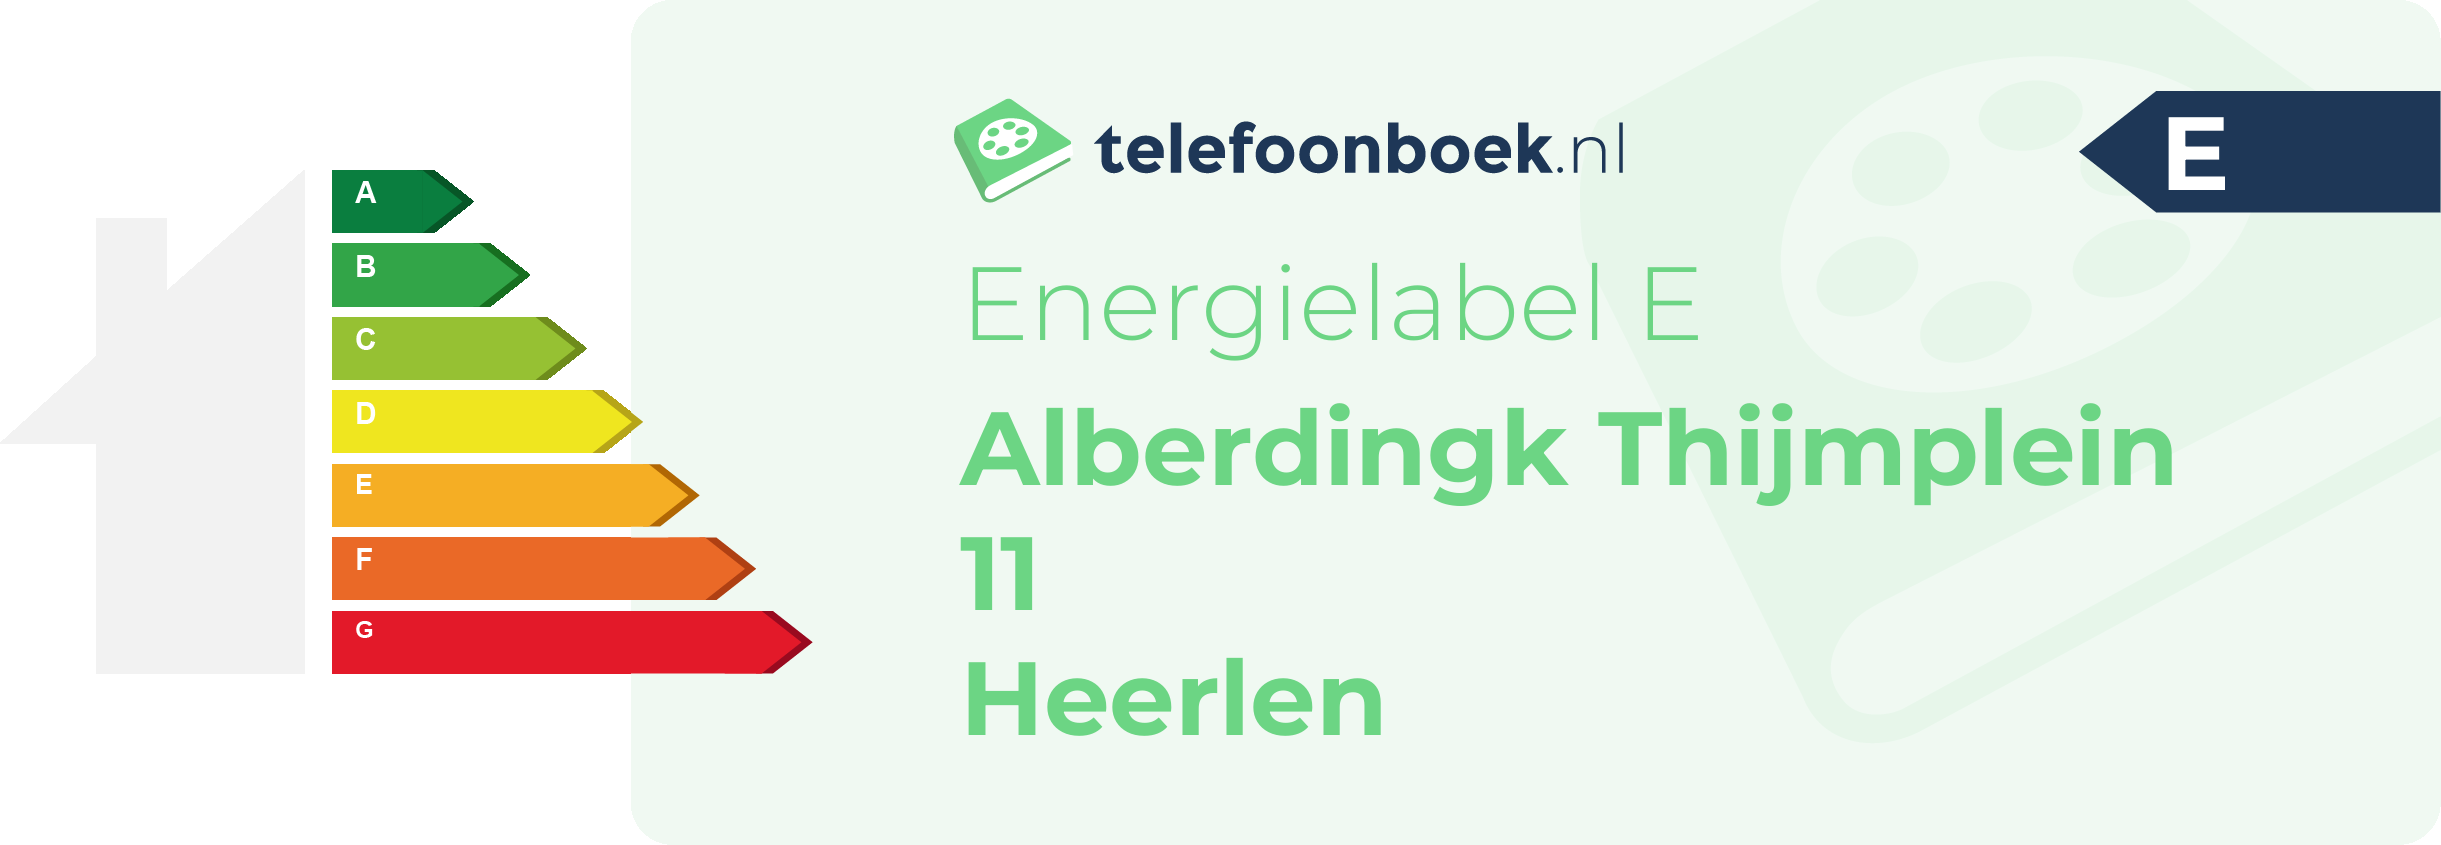 Energielabel Alberdingk Thijmplein 11 Heerlen